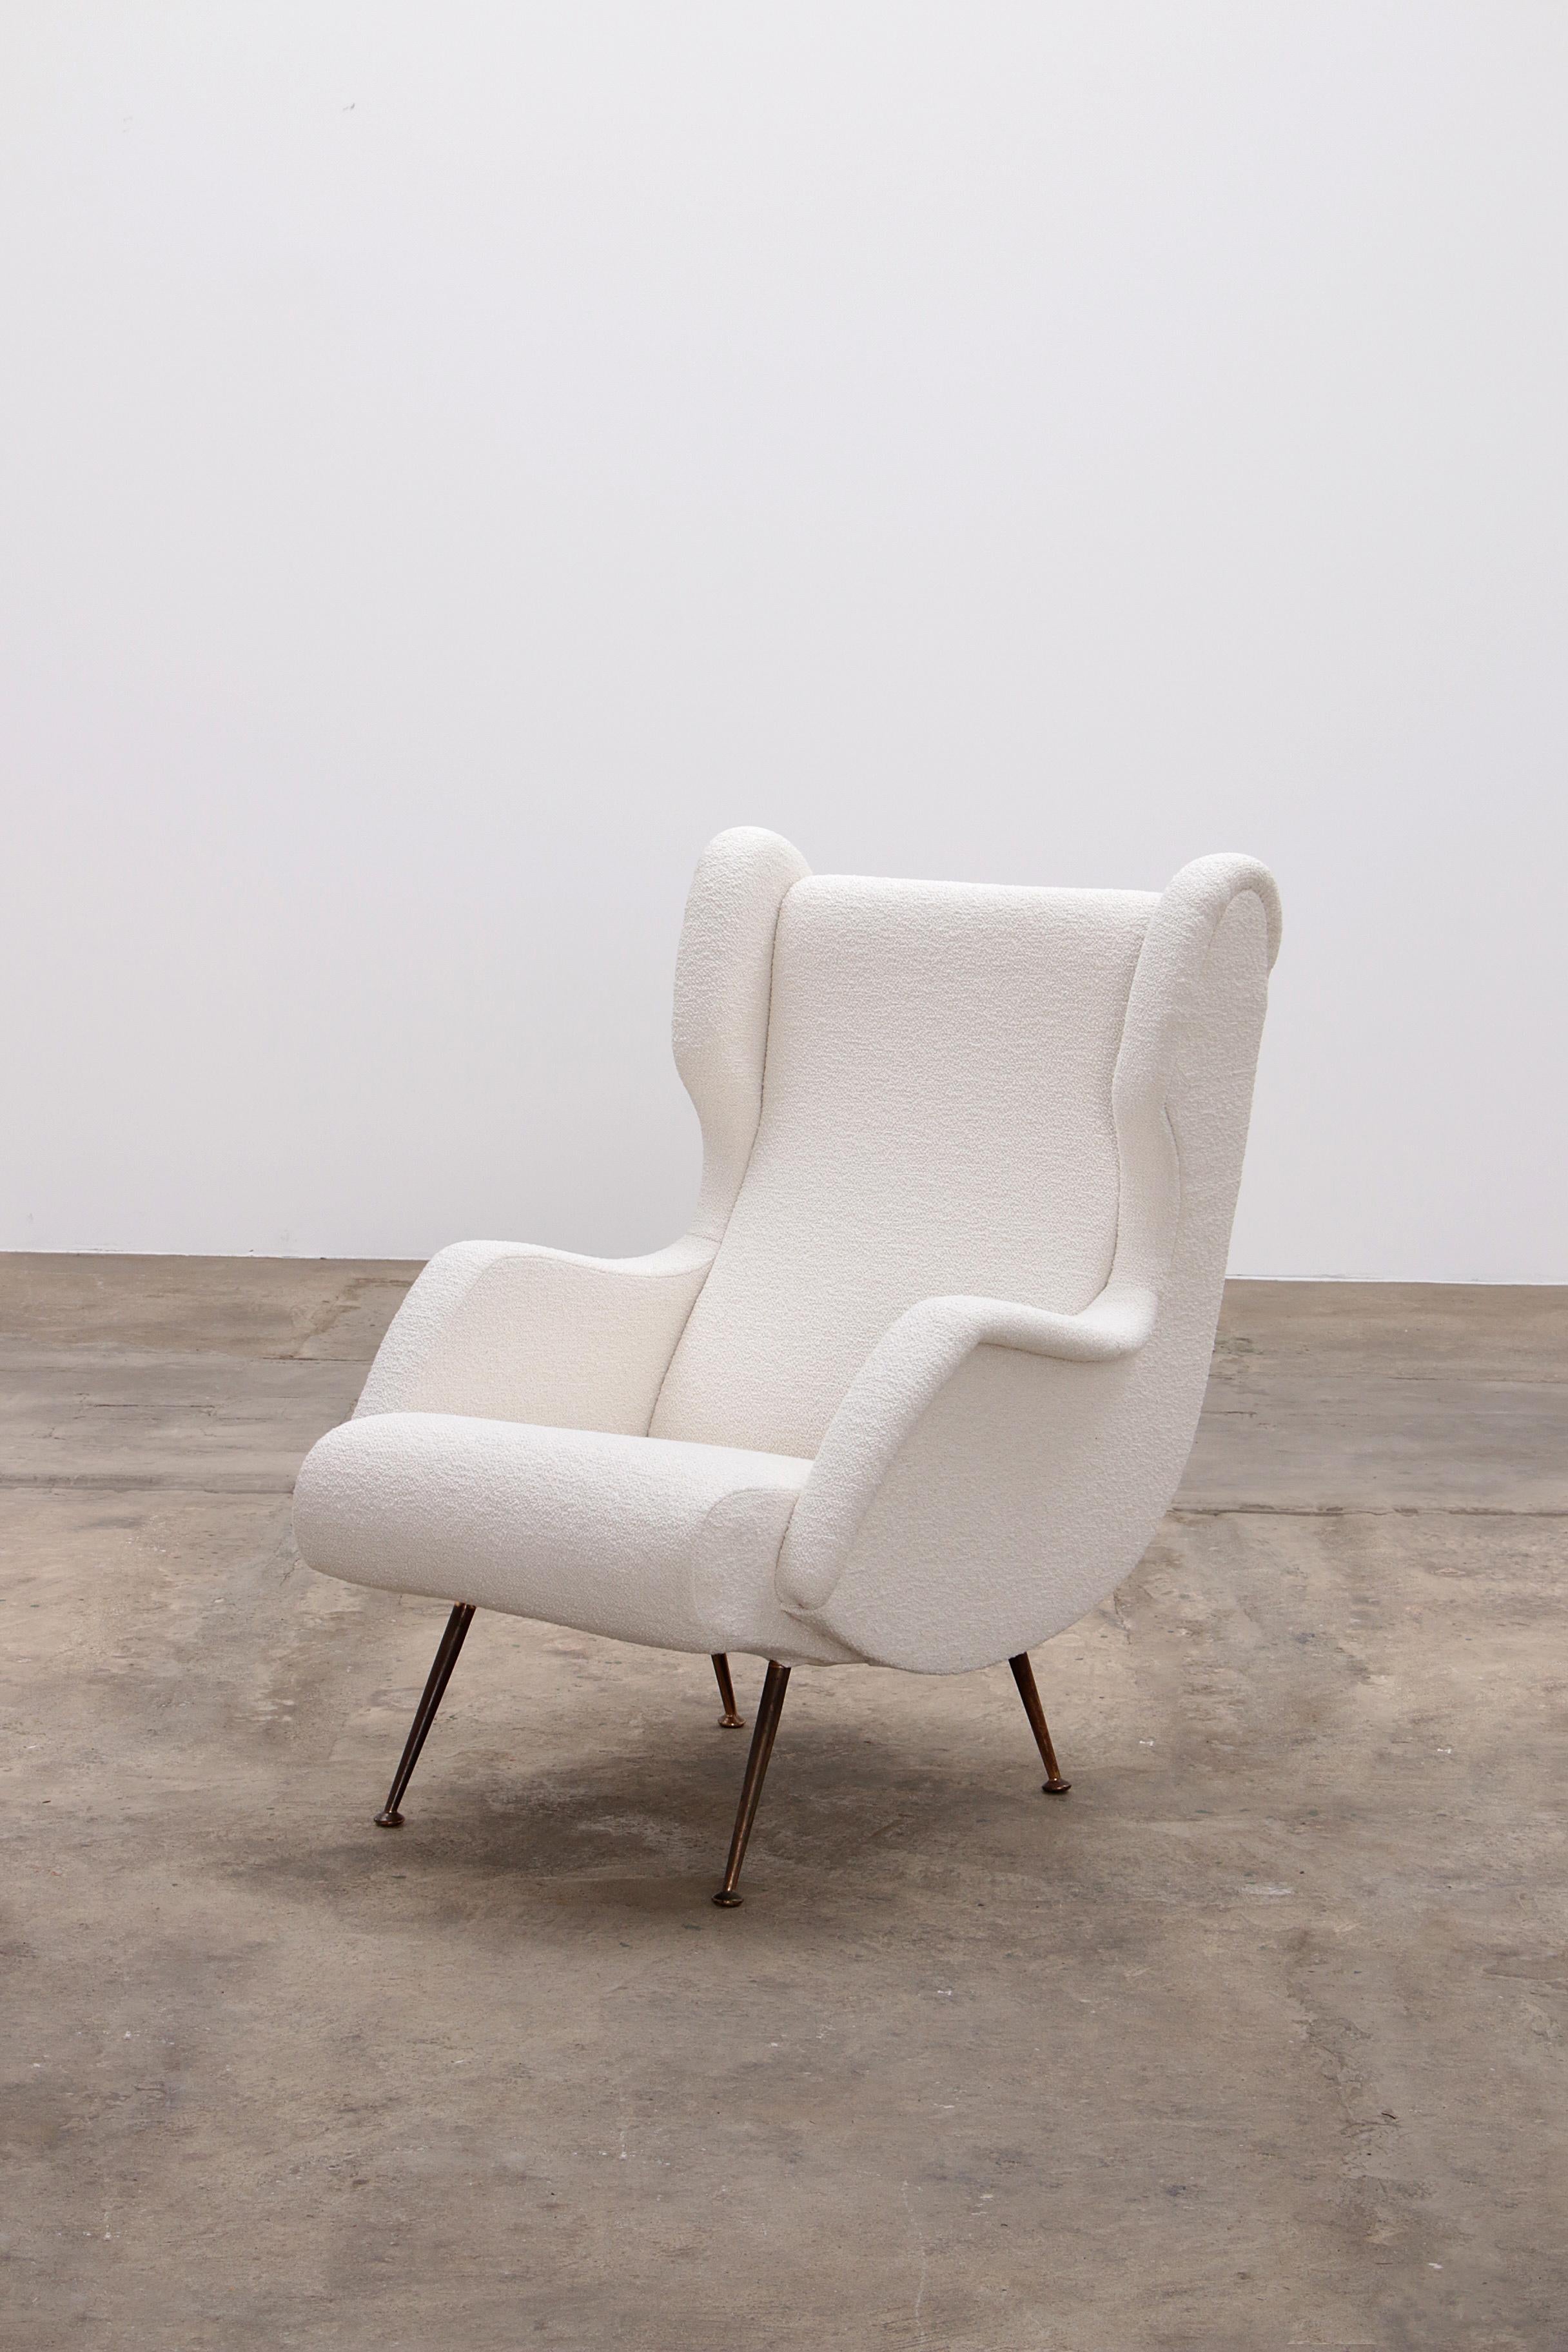 Italienischer Sessel von Marco Zanuso für Arflex, gepolstert mit Boucle, 1960

Sehr seltener Stuhl, entworfen von Marco Zanuso für Arflex in den 1950er Jahren. Dieser Loungesessel ist sehr bequem und klassisch elegant. Dieser Stuhl wurde komplett